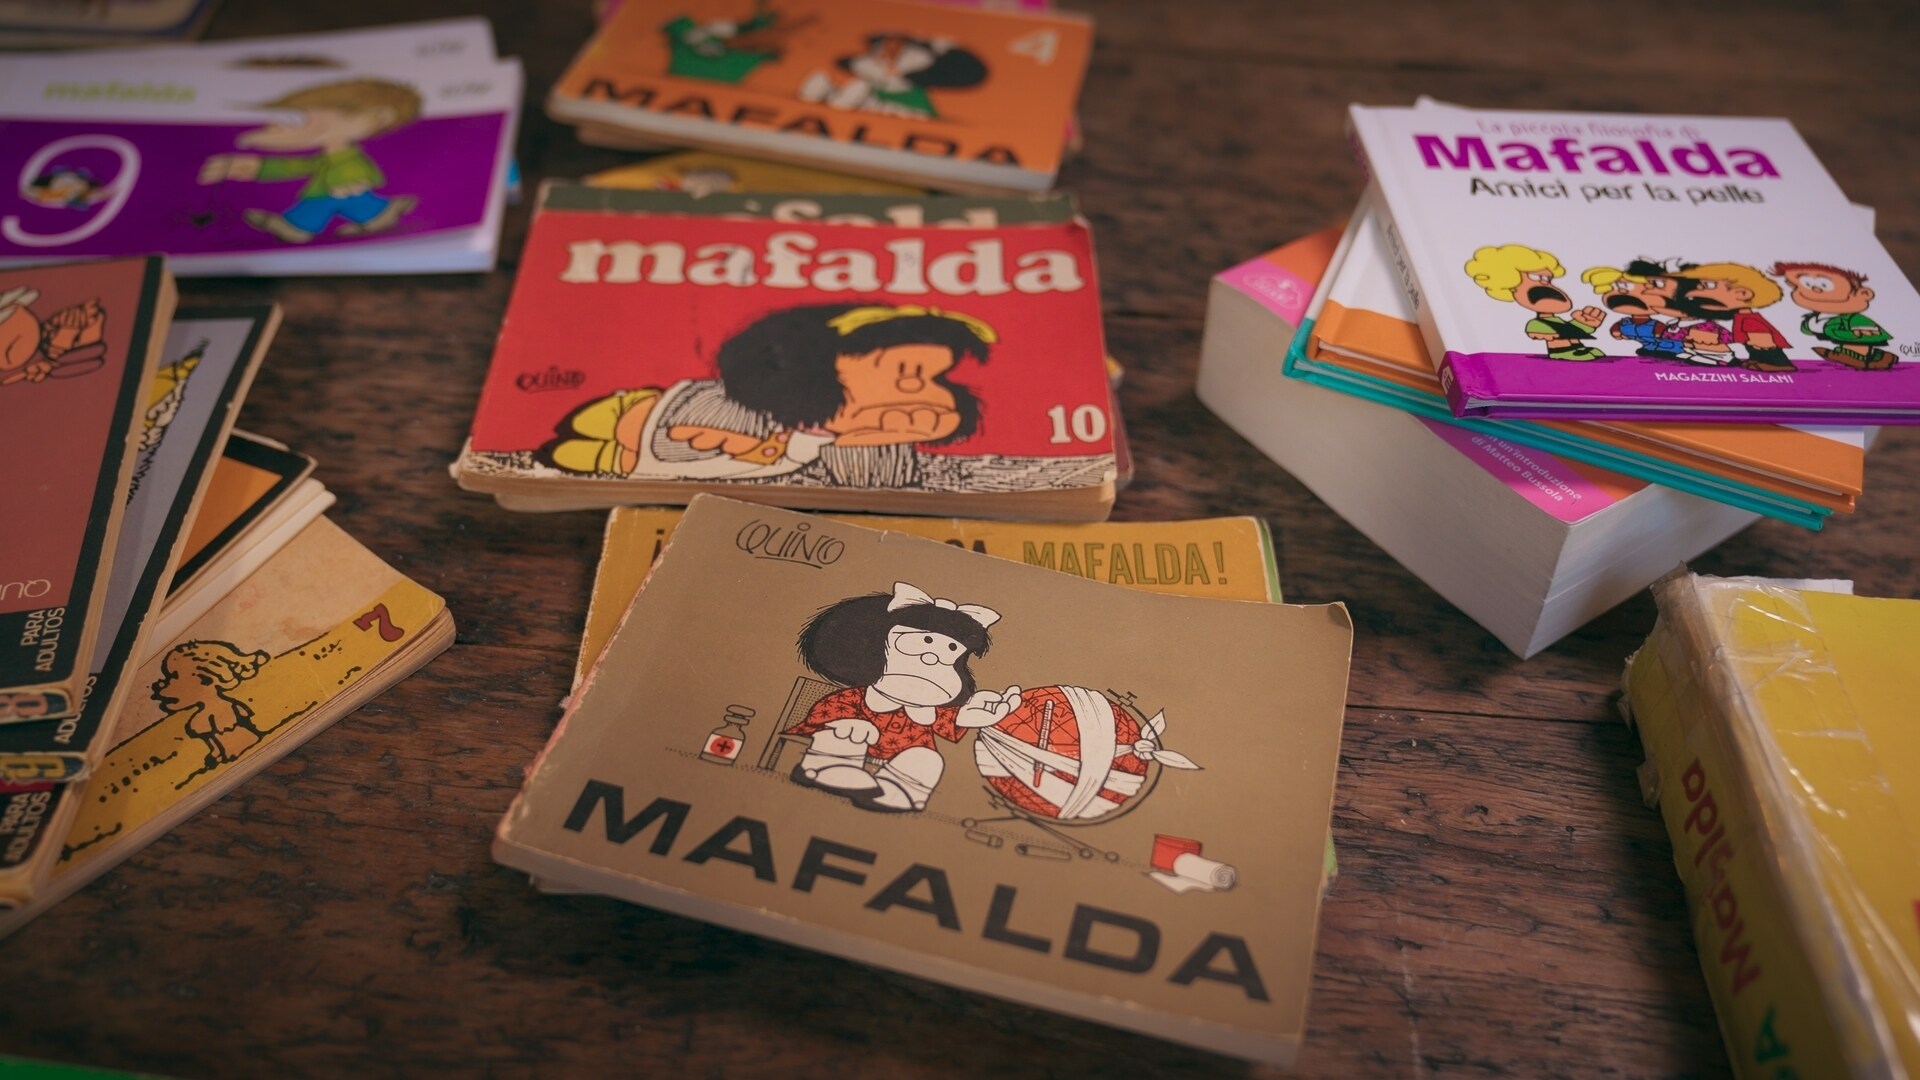 Voltando a Ler Mafalda: tudo sobre a nova série documental do Disney+